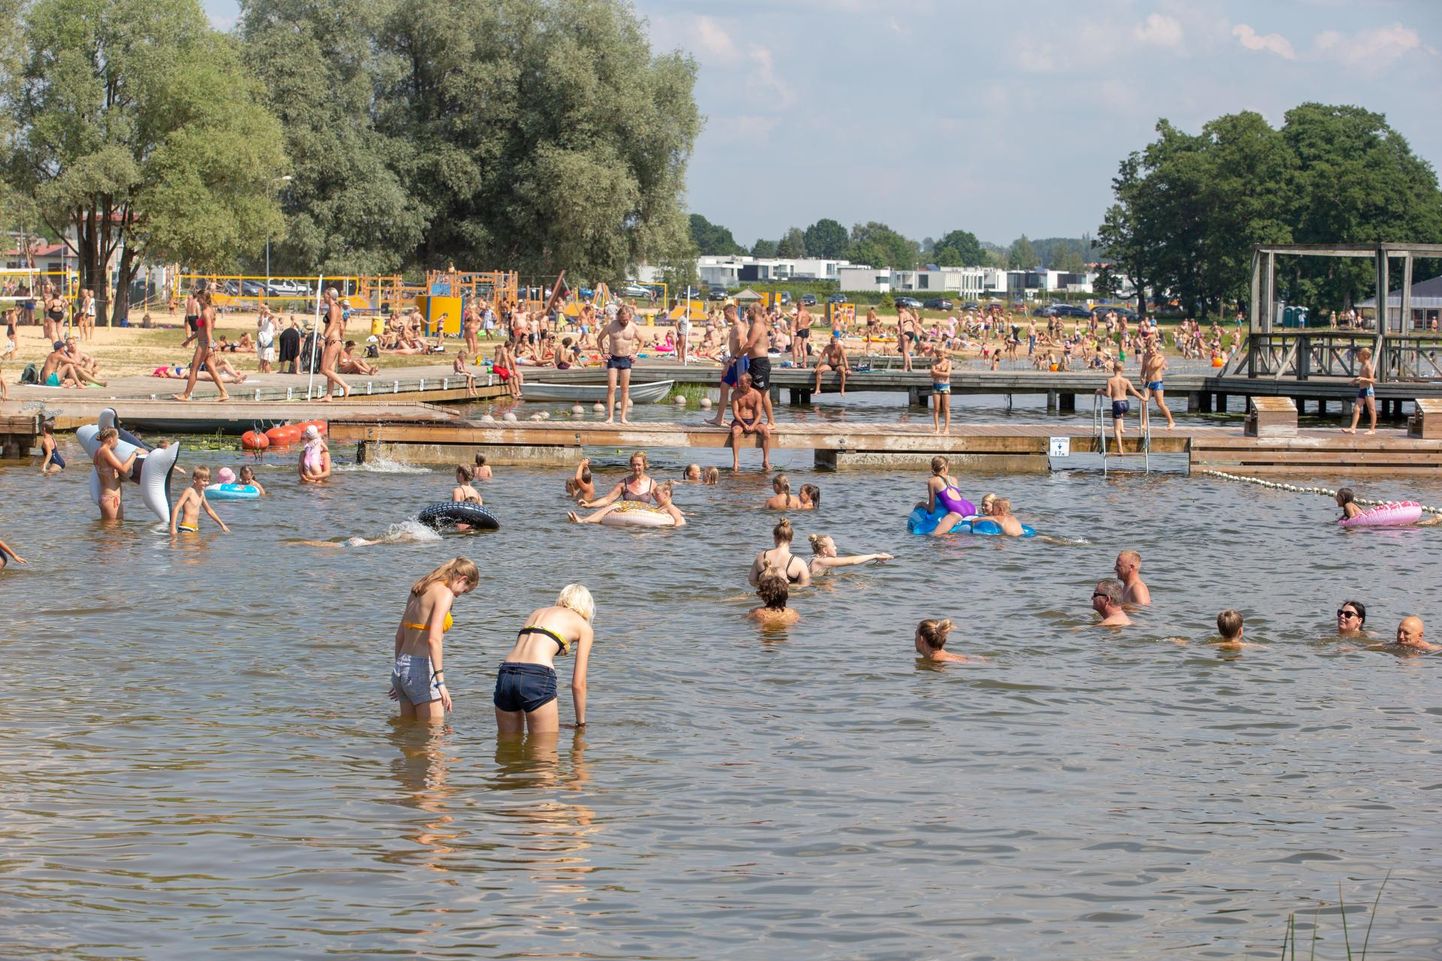 Pilt on tehtud Viljandi järve ääres läinud pühapäeval, mis oli selle suve kõige soojem päev.